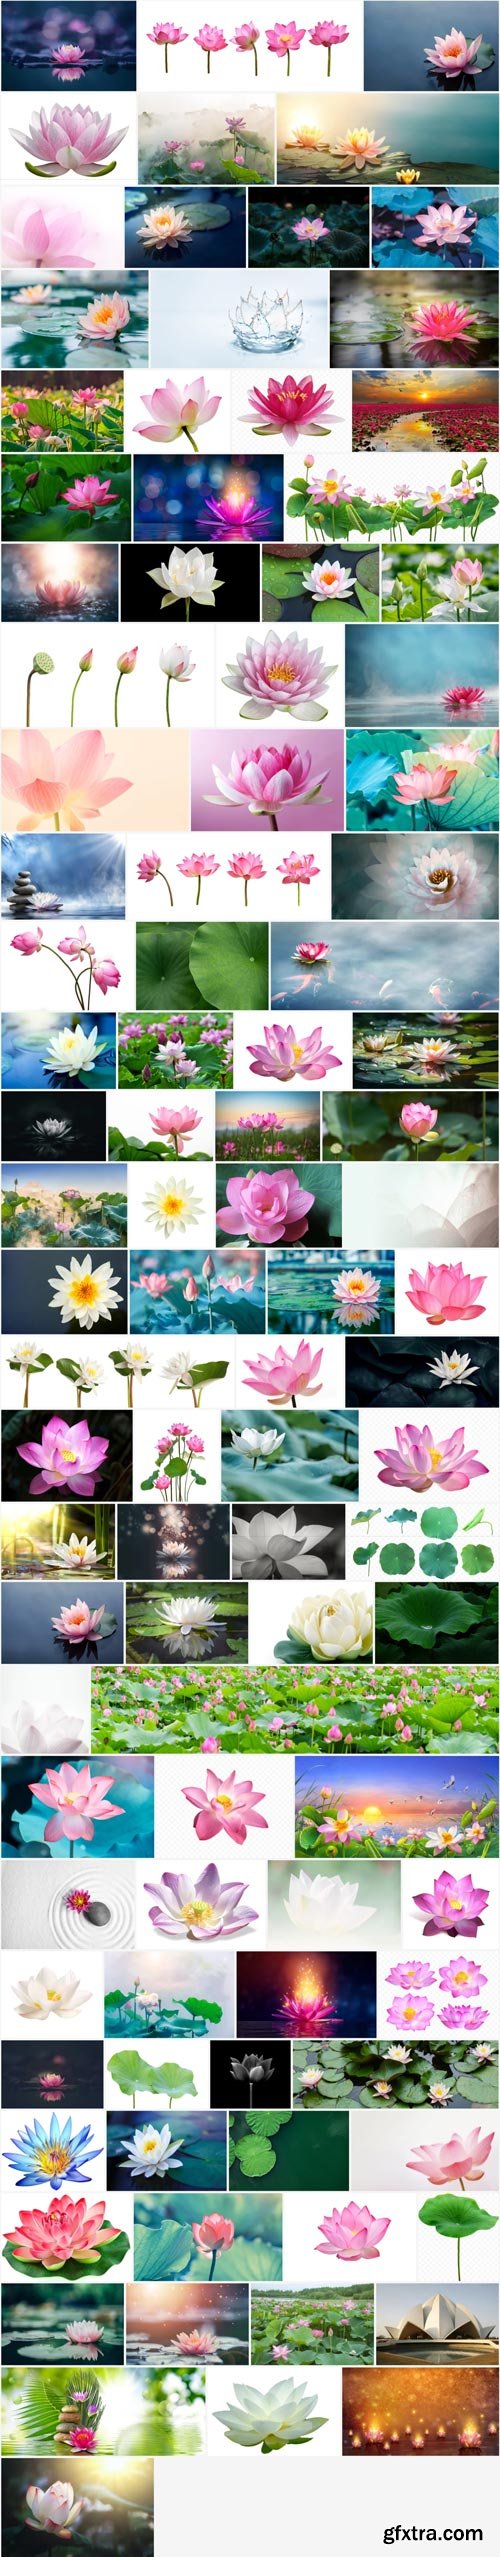 Amazing Photos, Lotus 100xJPEG